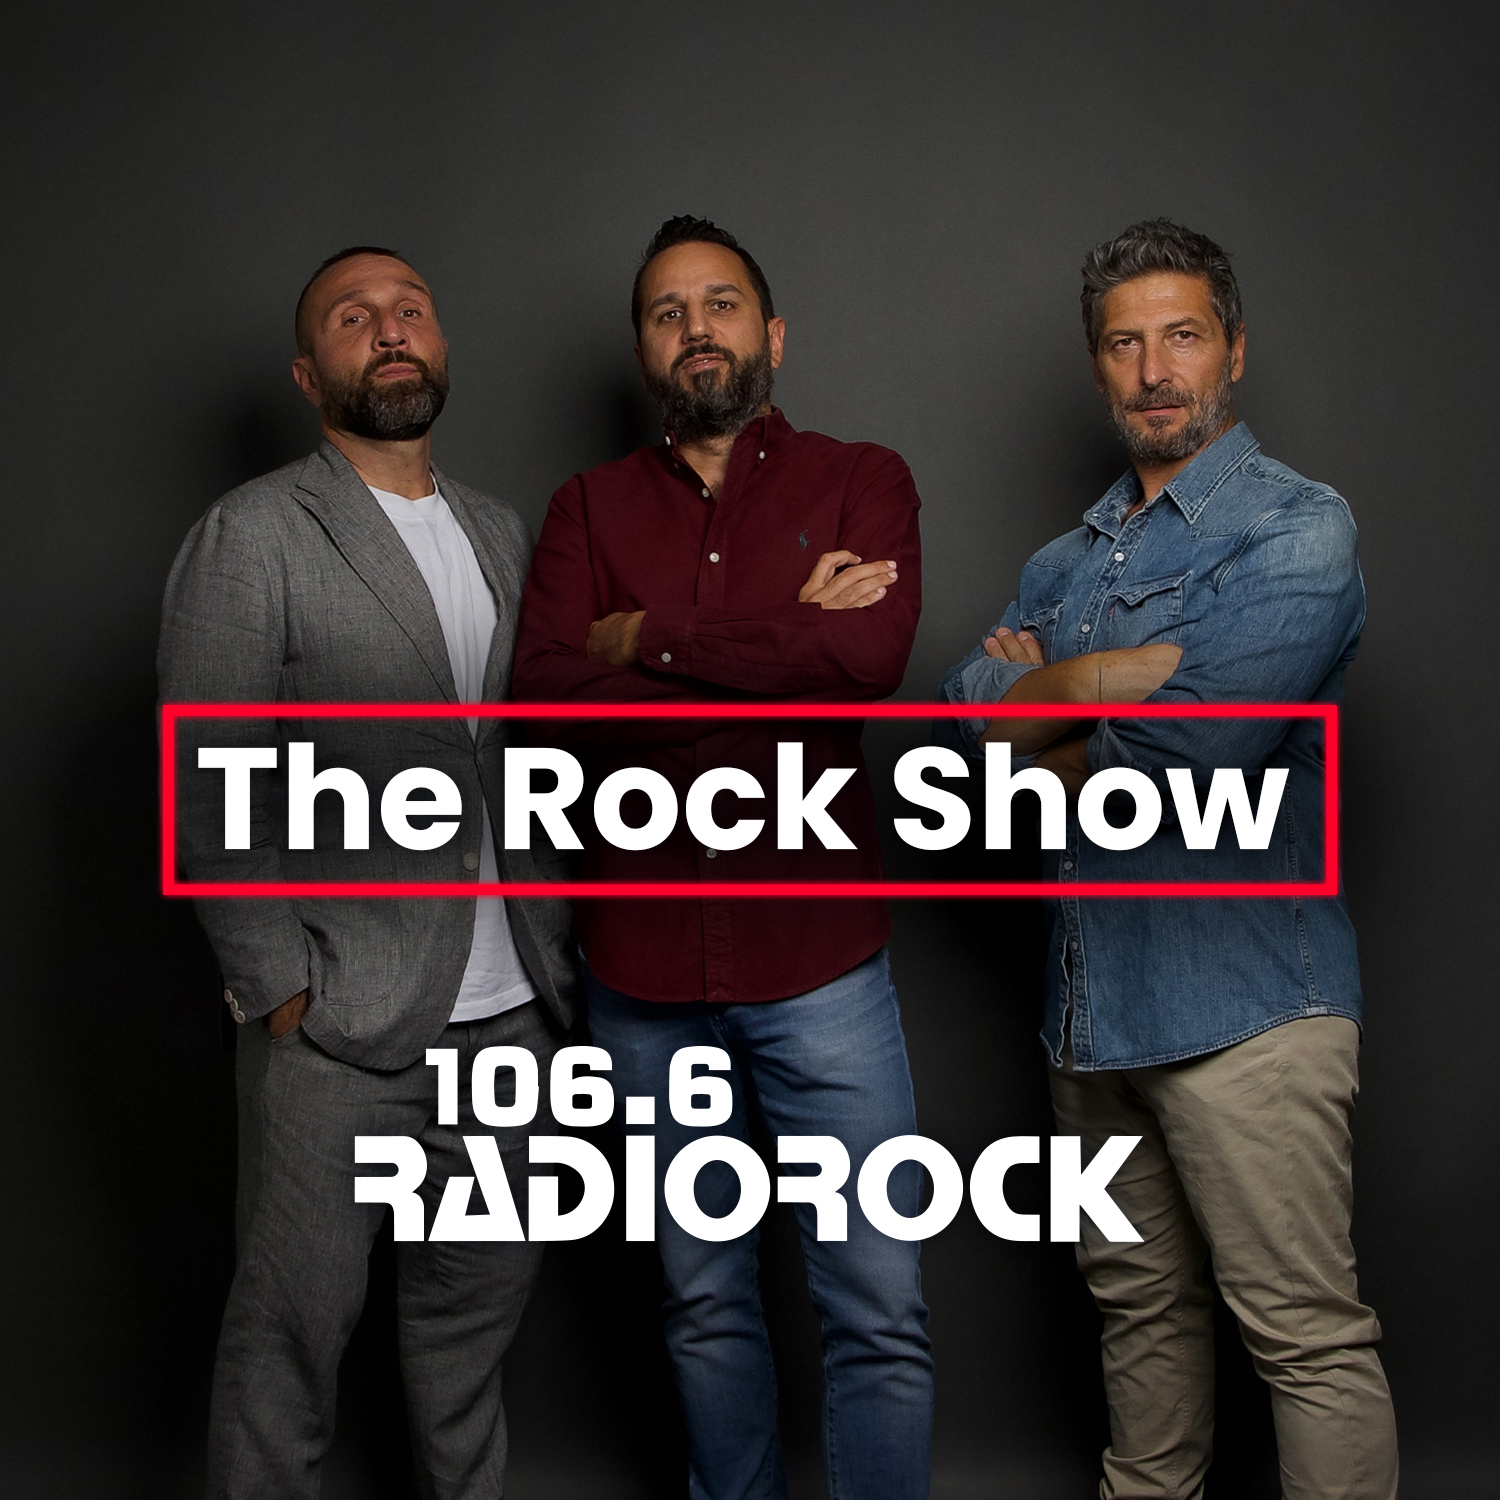 The Rock Show - S07E051: Quale merenda mangiavate a ricreazione? (15-11-23)